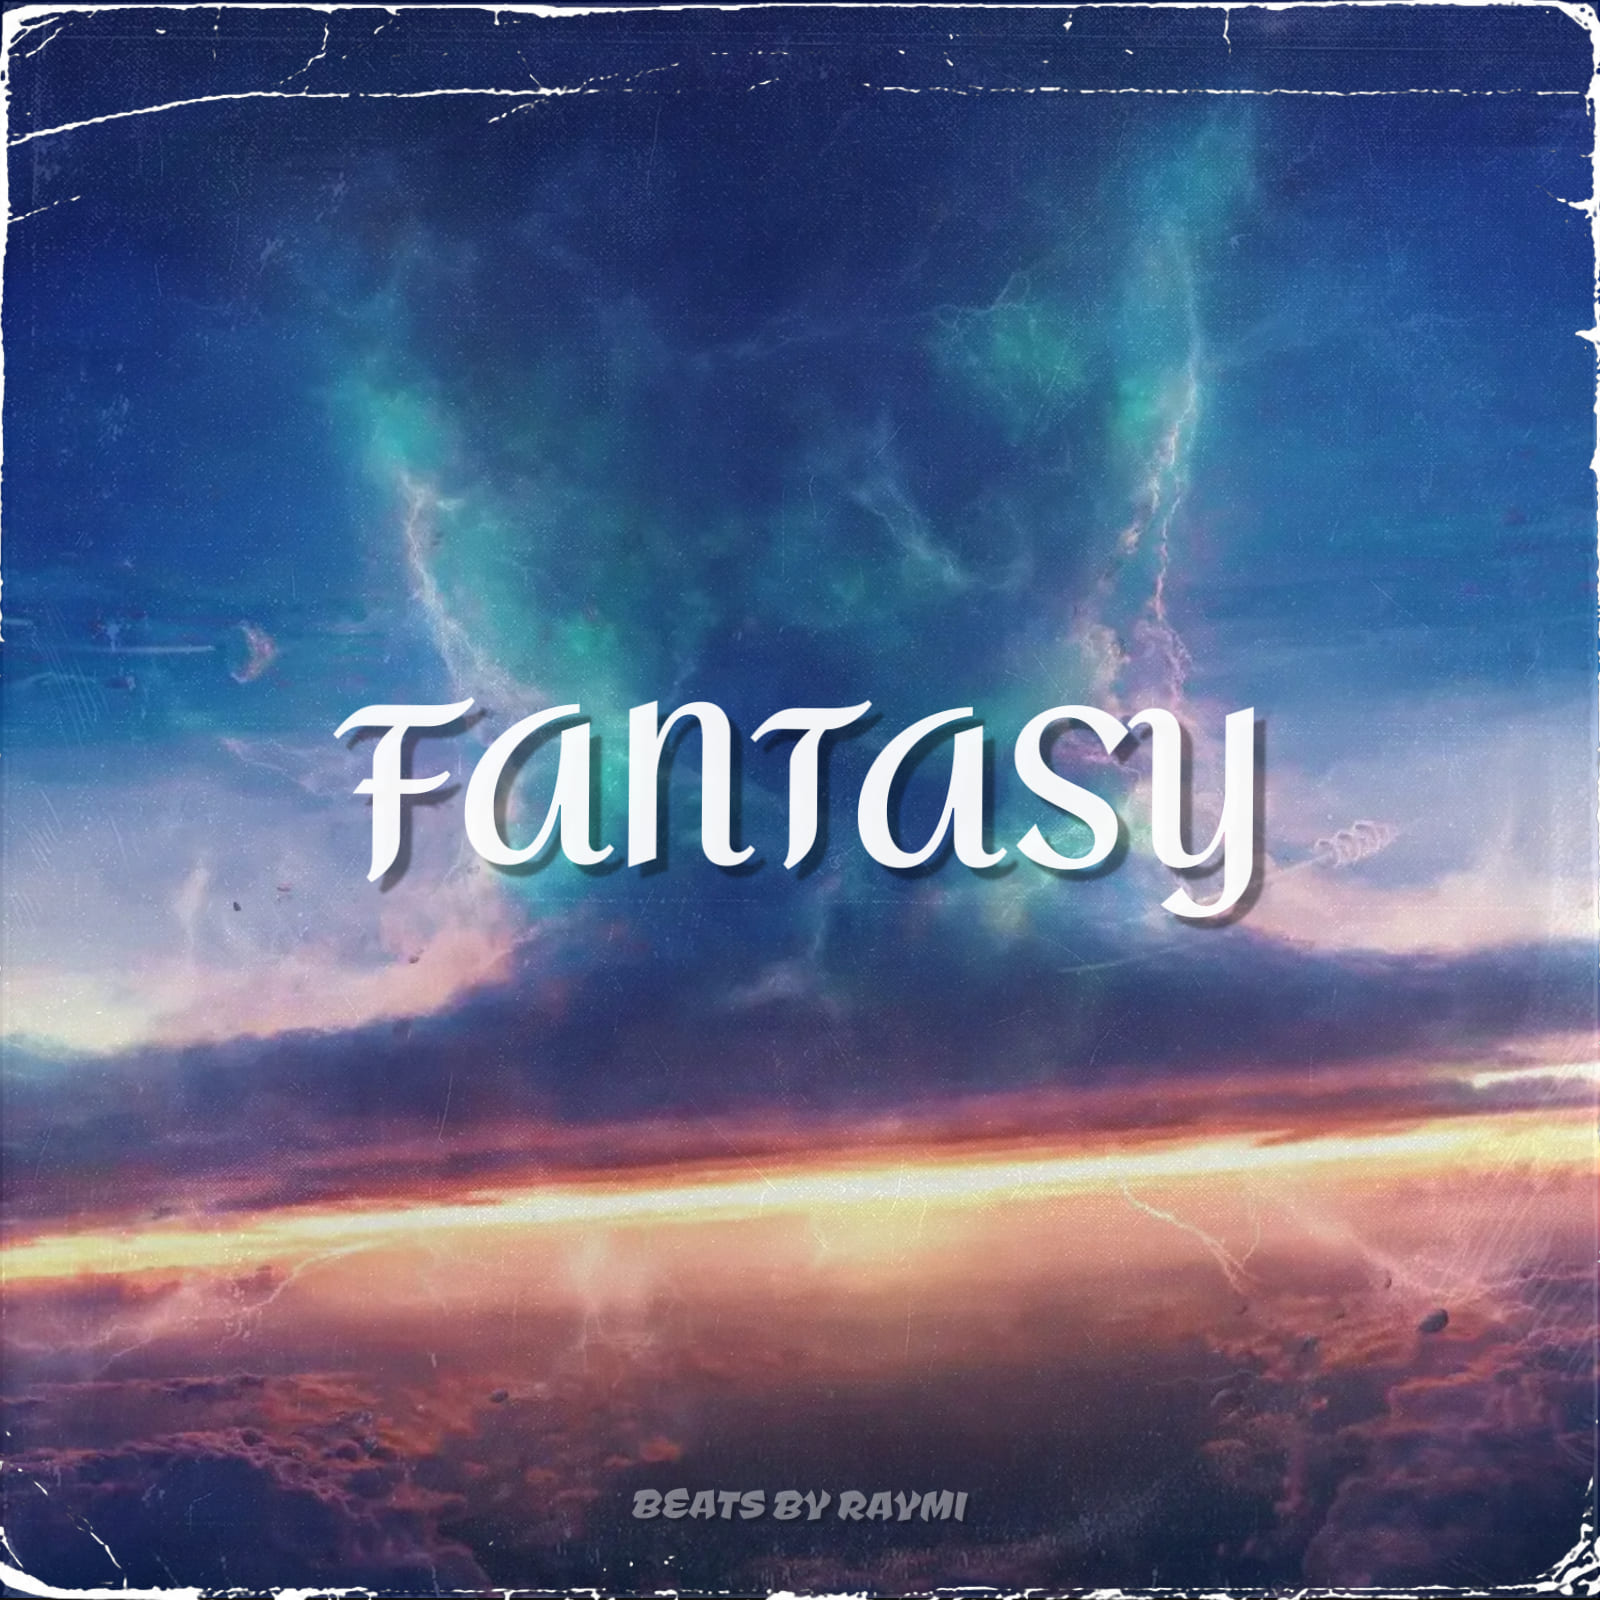 обложка бита, Raymi, музыка, cover, Fantasy (энергичный, вдохновляющий бит)